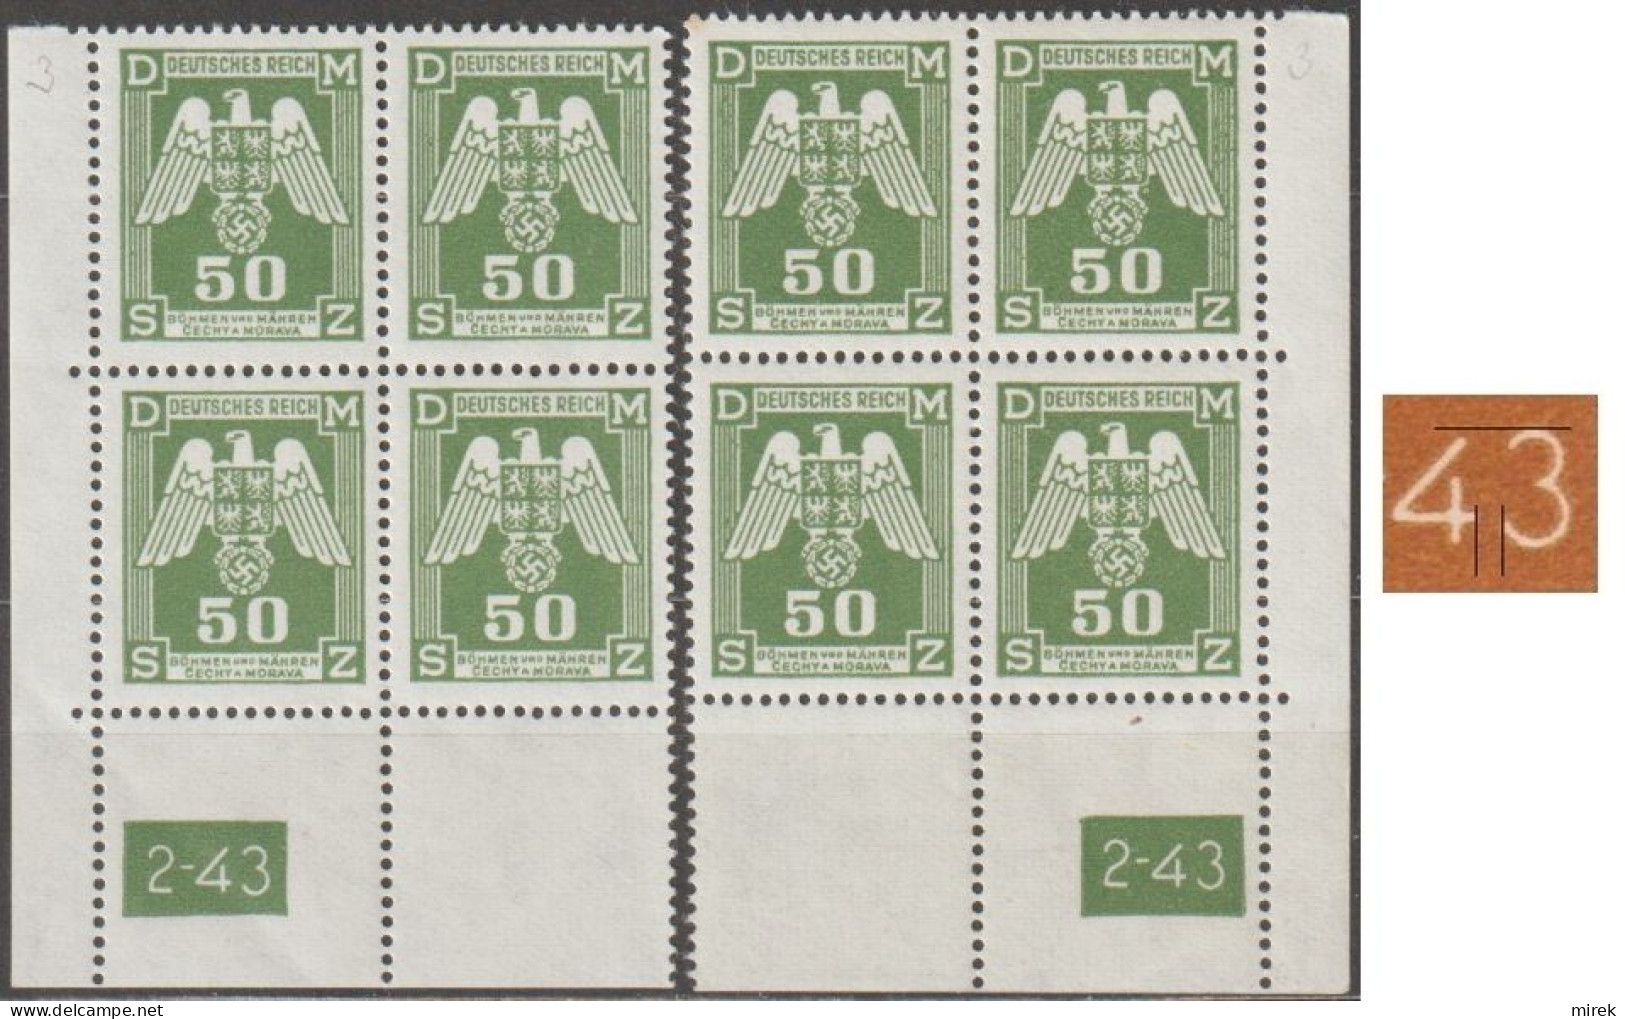 062/ Pof. SL 15, Corner Stamps, Plate Number 2-43, Type 2, Var. 3 - Ongebruikt